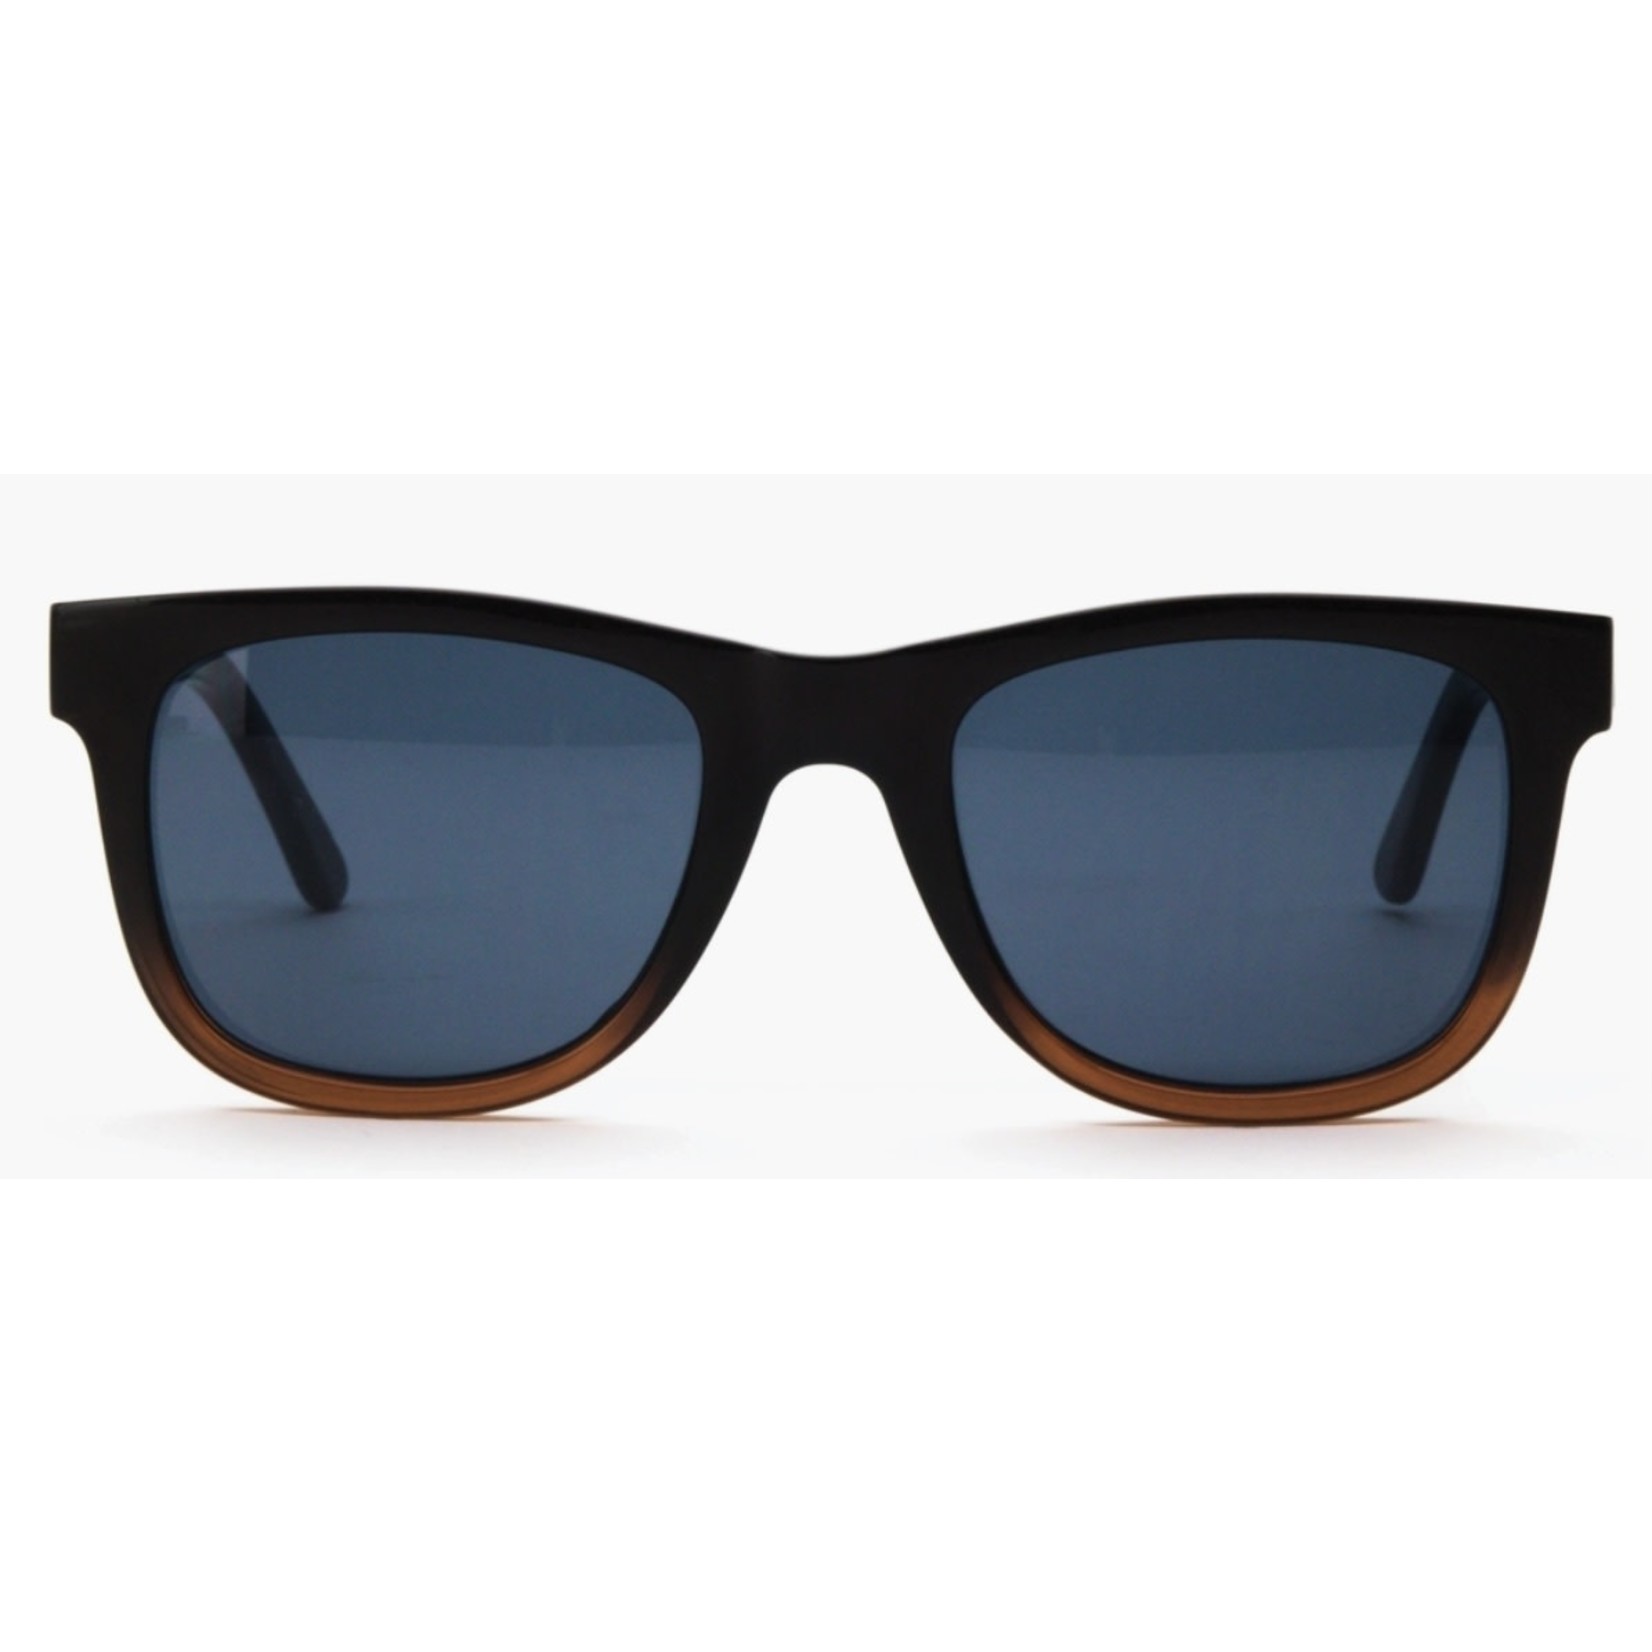 Optimum Optical Accessories: Assorted Sunglasses